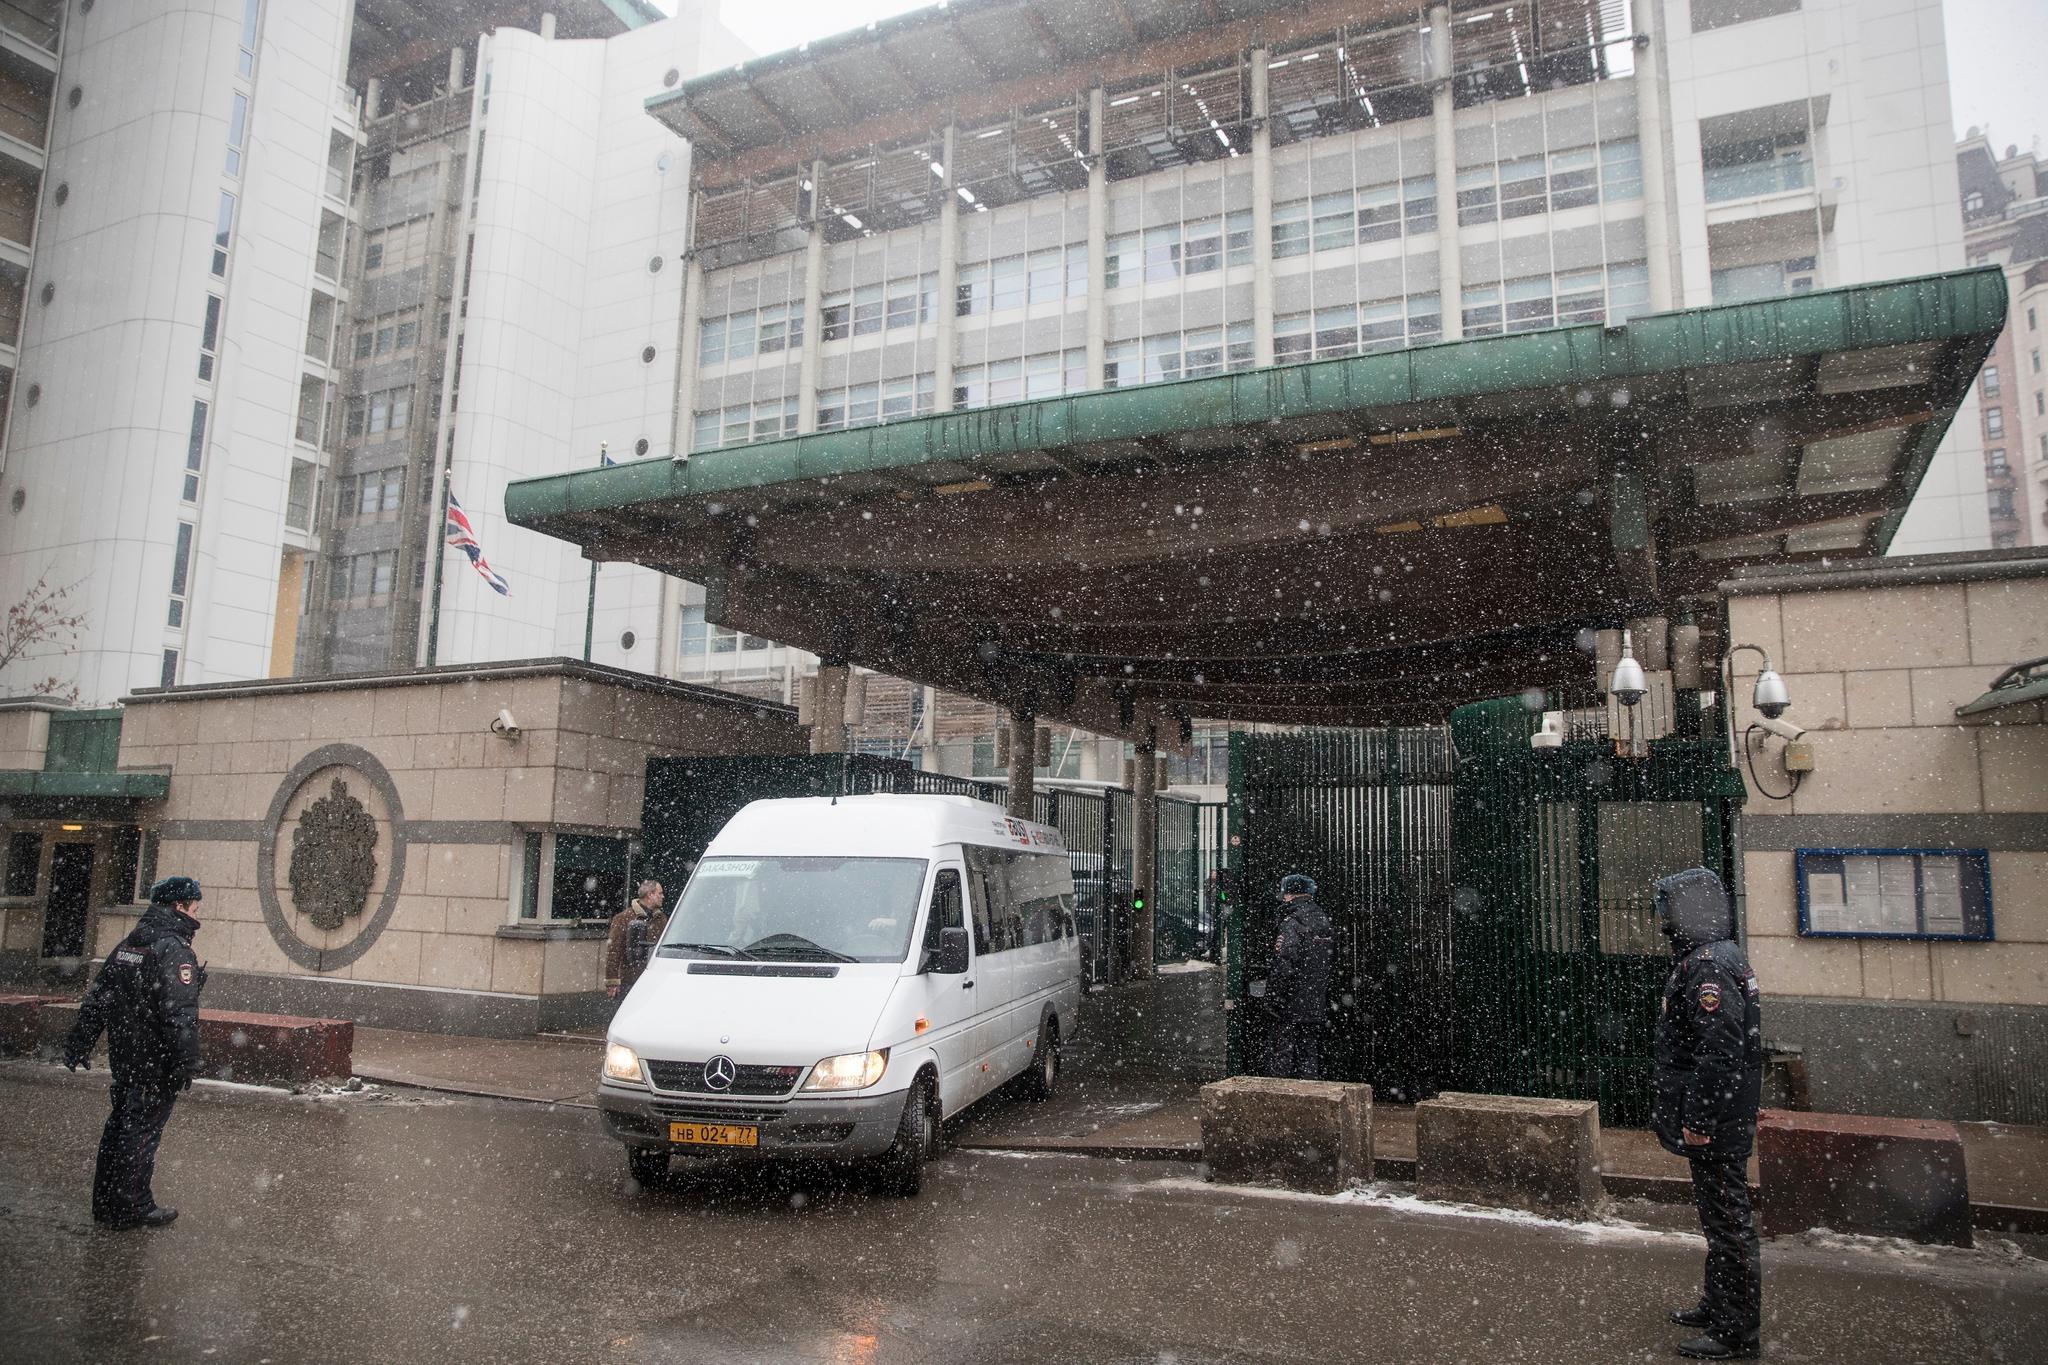   En buss som angivelig fraktet utviste, britiske diplomater, forlot den britiske ambassaden i Moskva forrige uke. Nå vil Russland utvise enda flere.